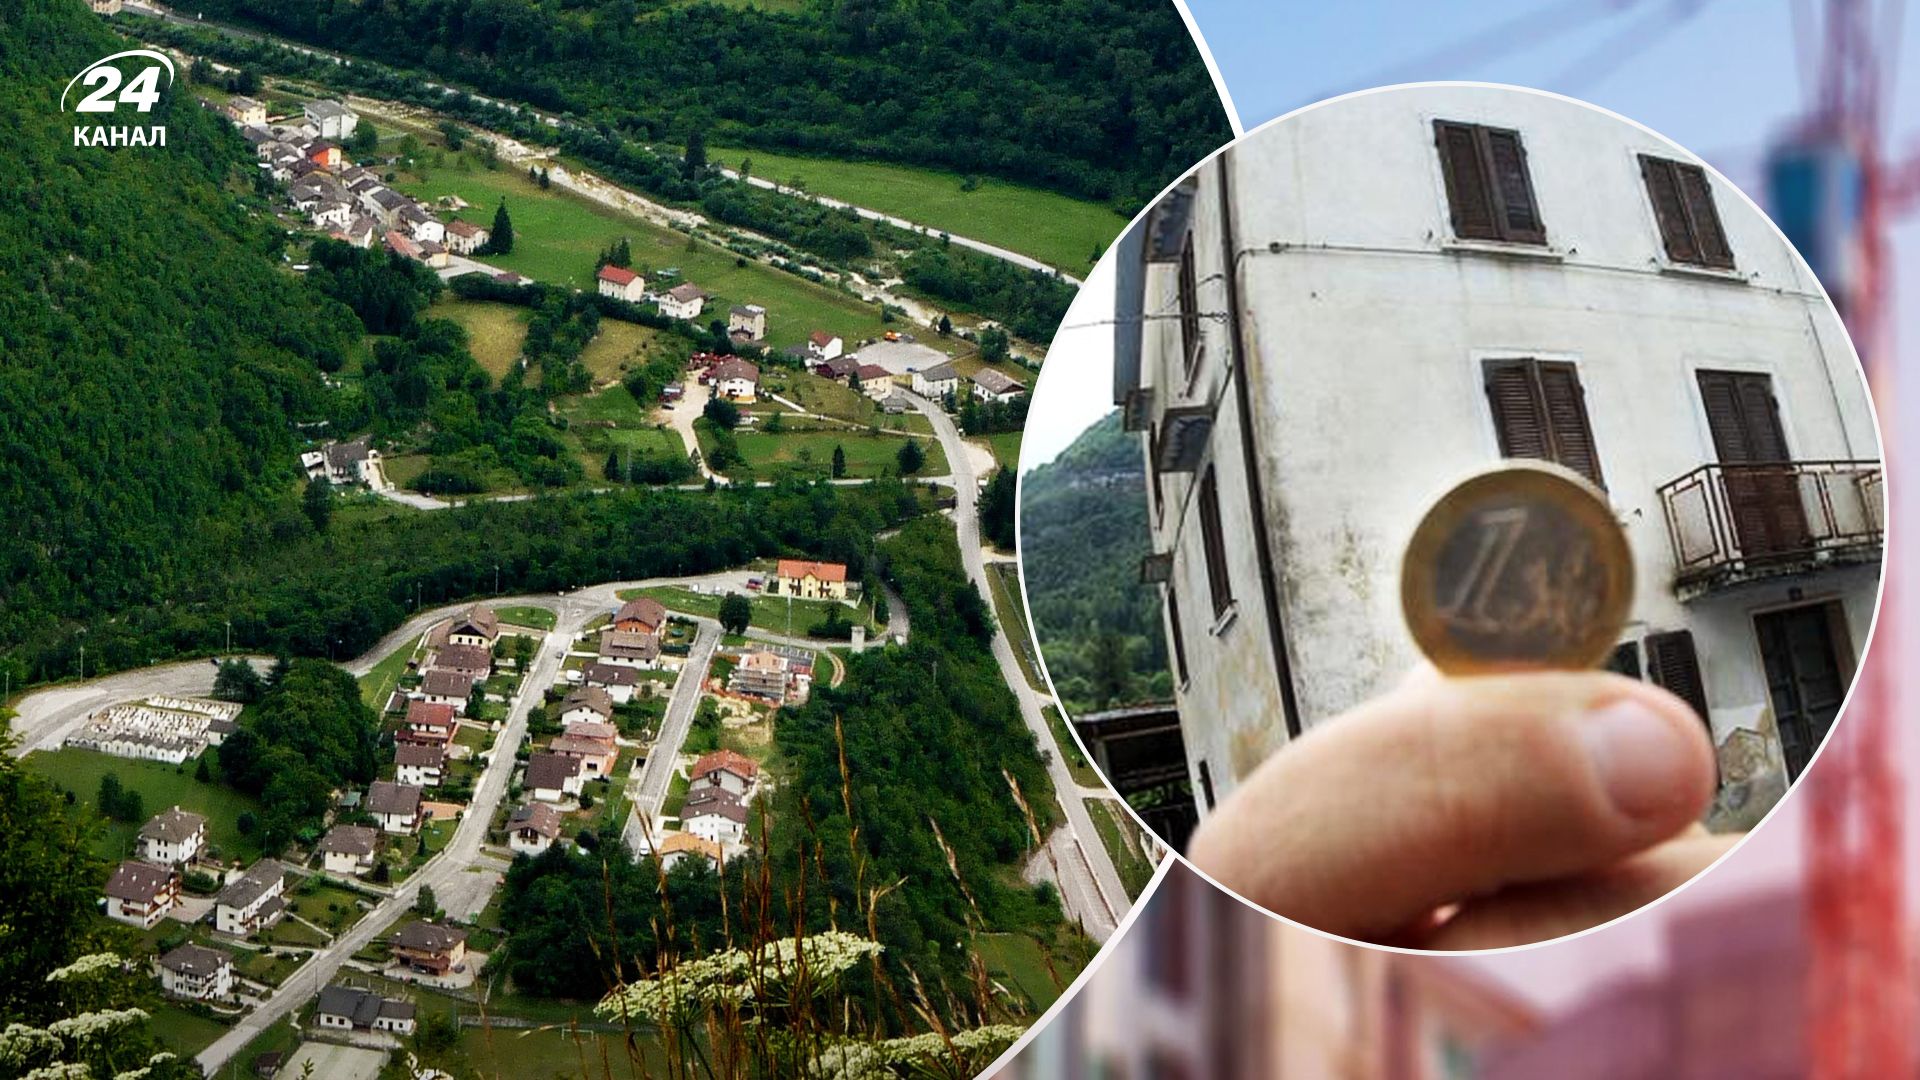 Аренда жилья за 1 евро: какой итальянский поселок запустил новую программу - Недвижимость